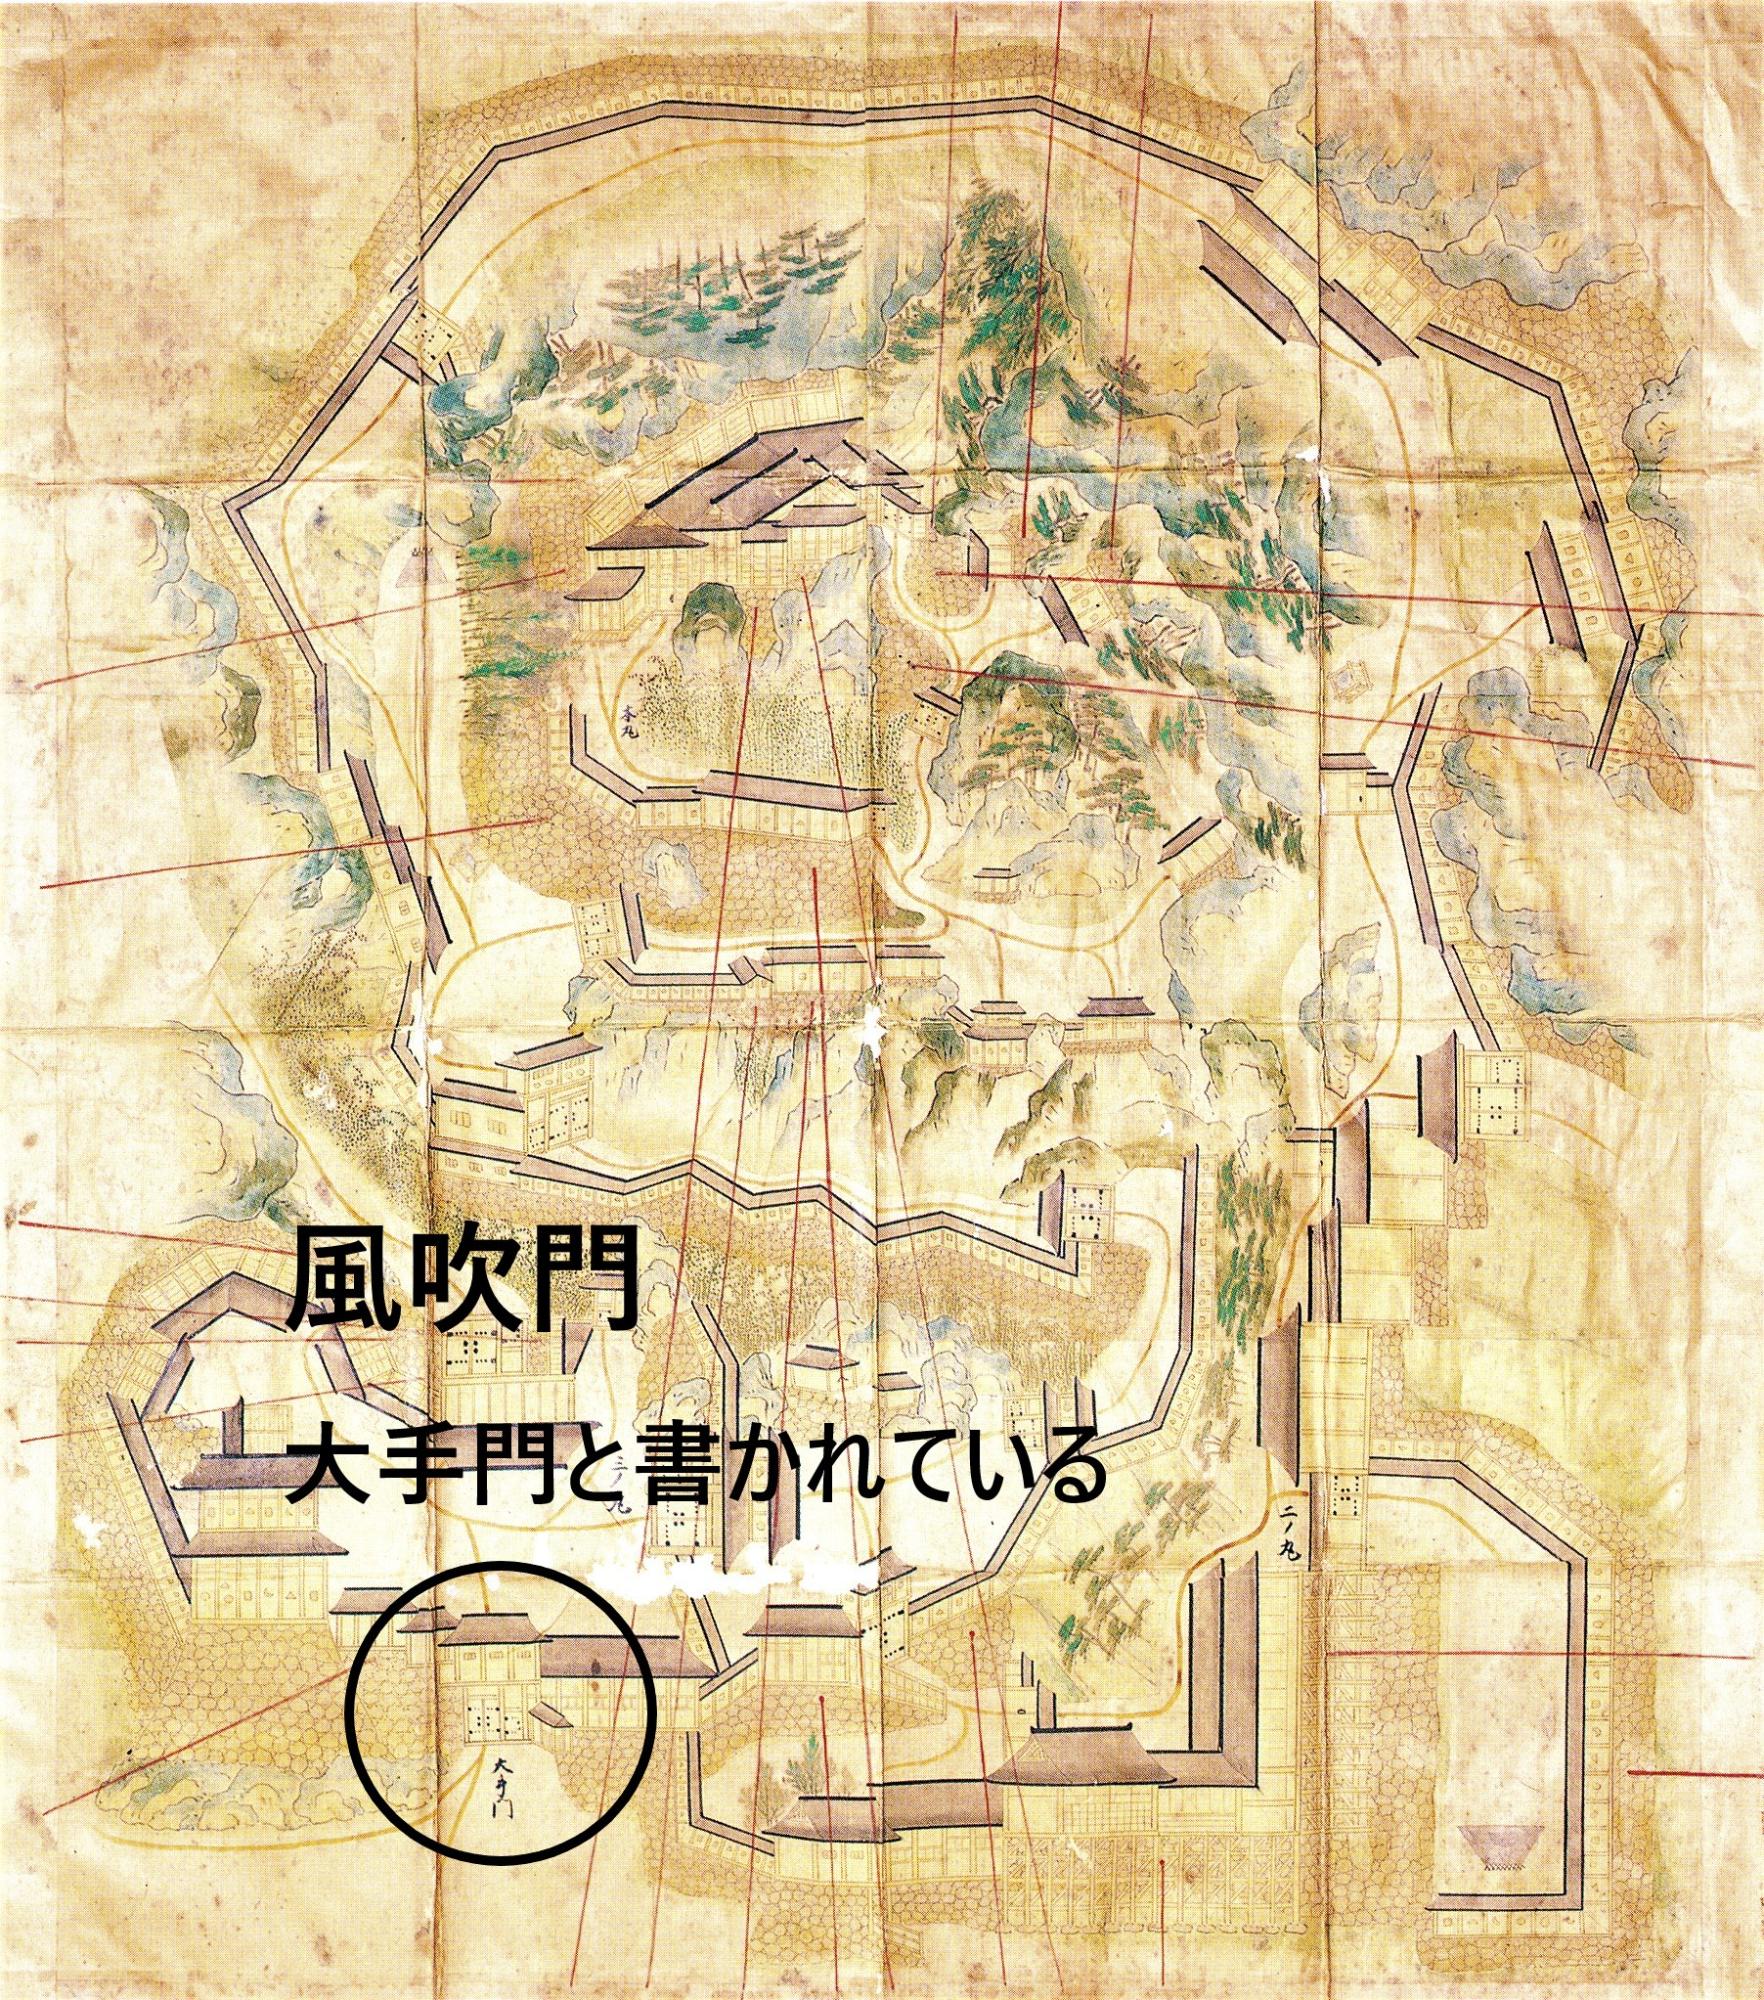 写真2．苗木城絵図 享保3(1718)年頃･･･大手門と記入あり